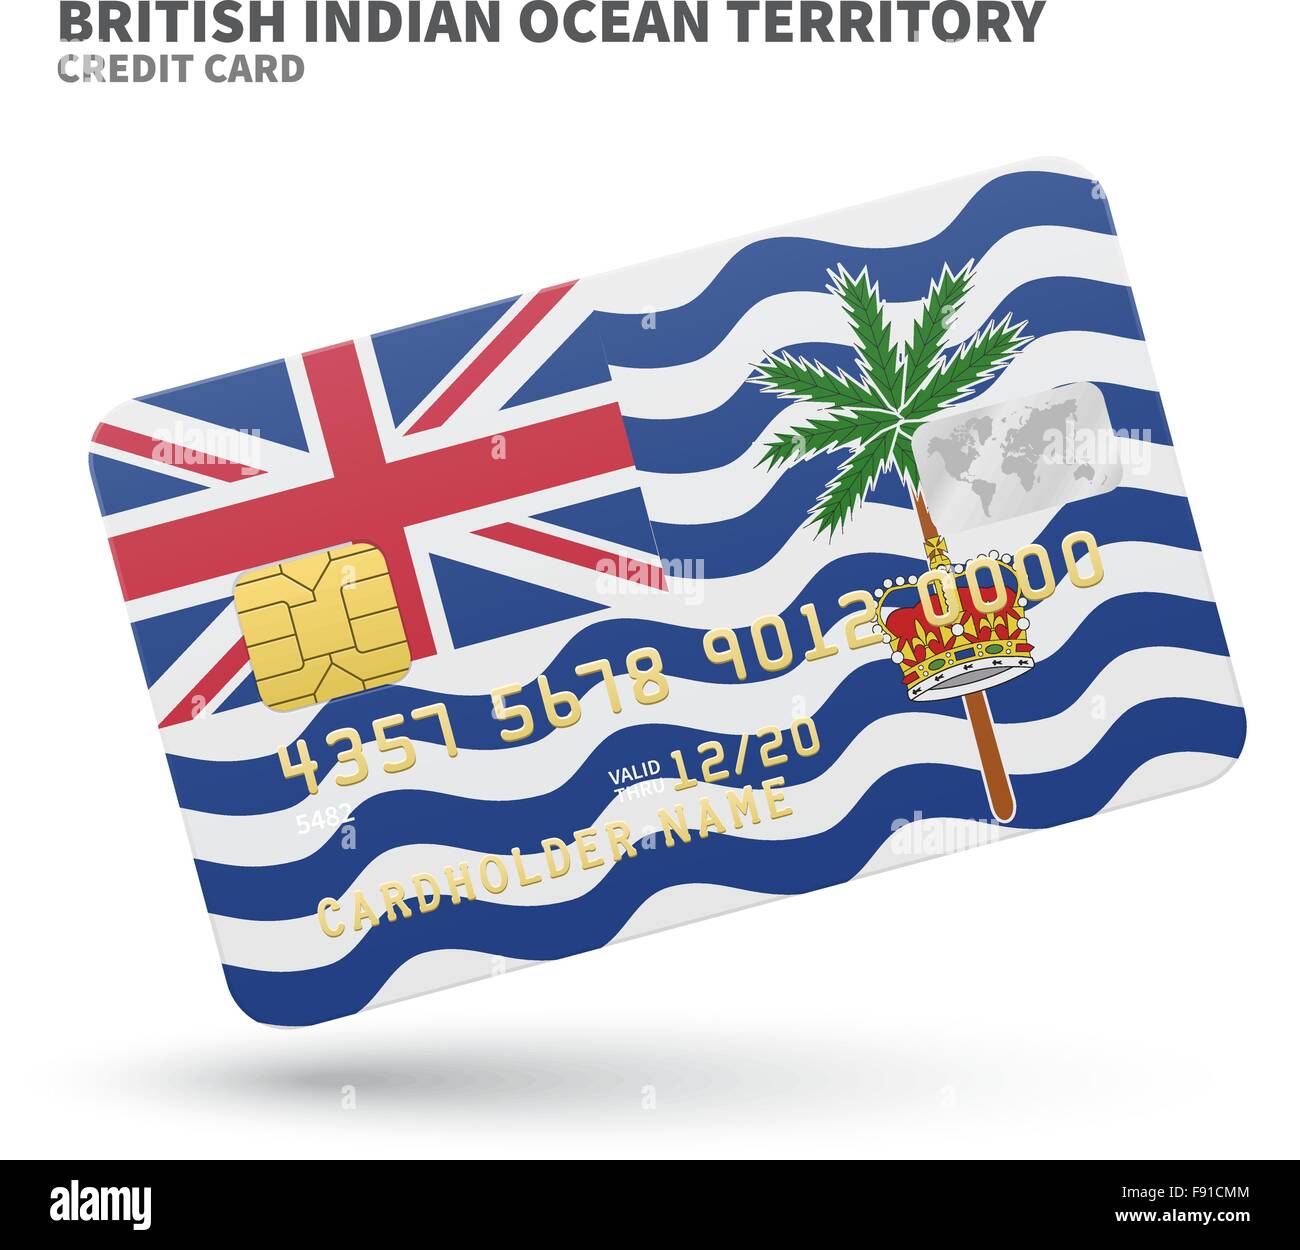 Carta di credito con Territorio britannico dell'Oceano Indiano bandiera sfondo per la banca, presentazioni e business. Isolato su bianco Illustrazione Vettoriale